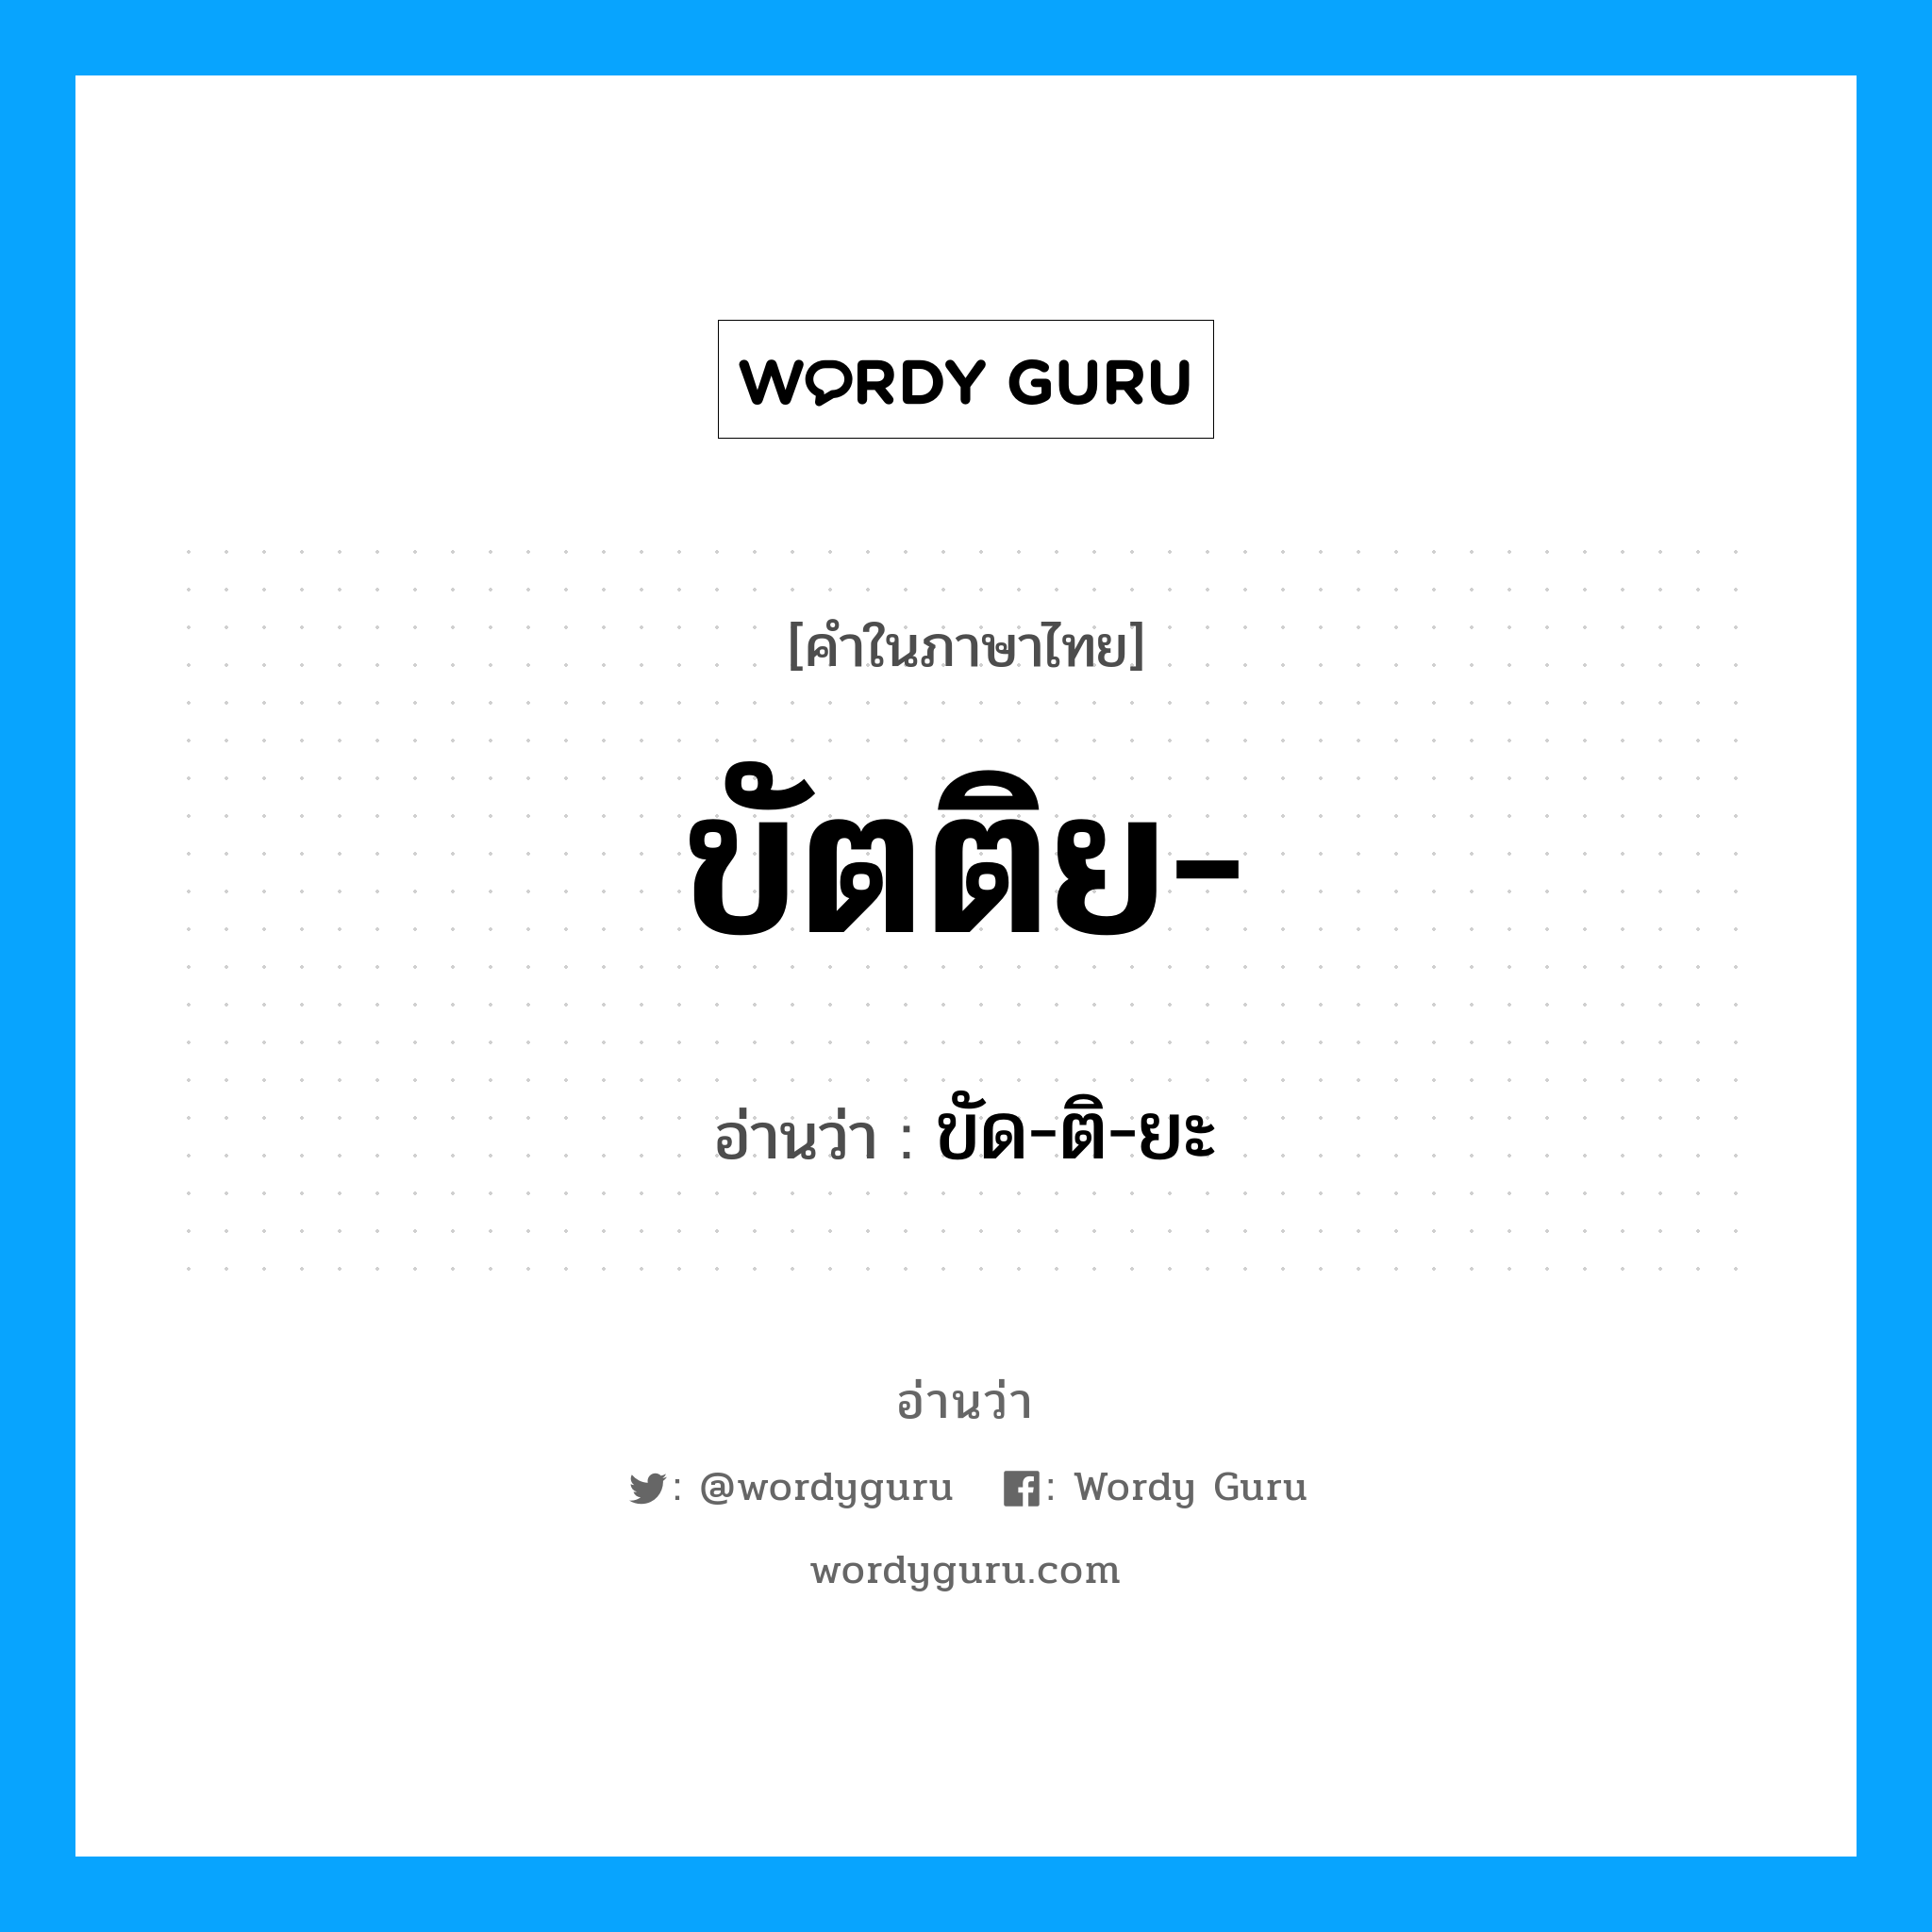 ขัด-ติ-ยะ เป็นคำอ่านของคำไหน?, คำในภาษาไทย ขัด-ติ-ยะ อ่านว่า ขัตติย-